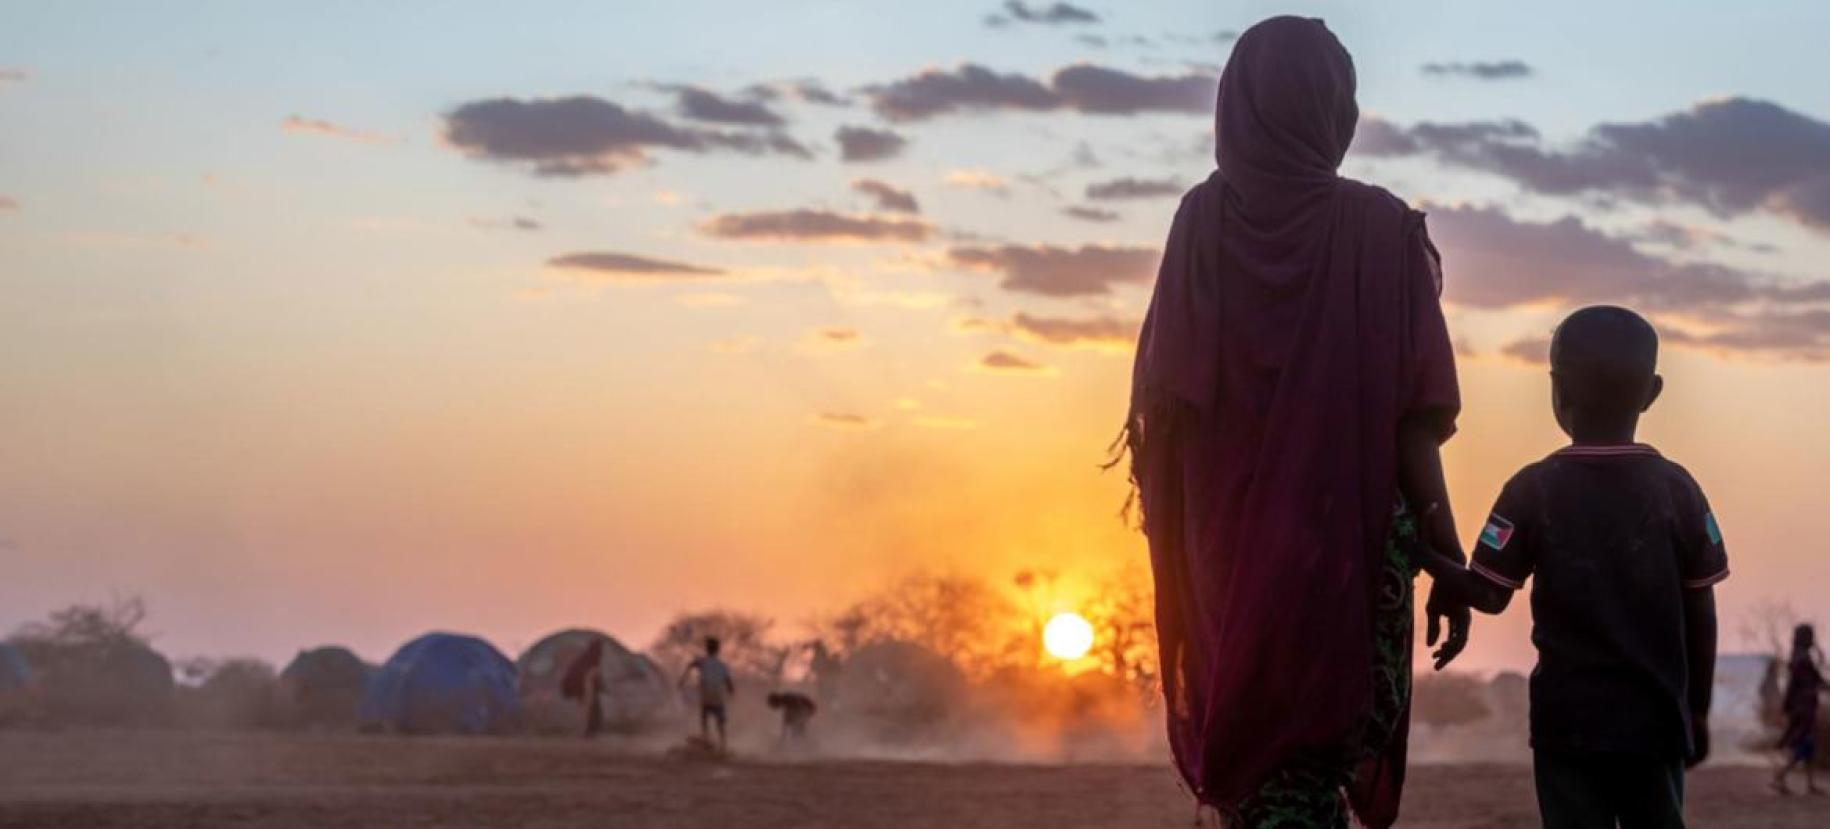 Фотография женщины и маленького мальчика, на фоне закатного солнца, в лагере для беженцев.